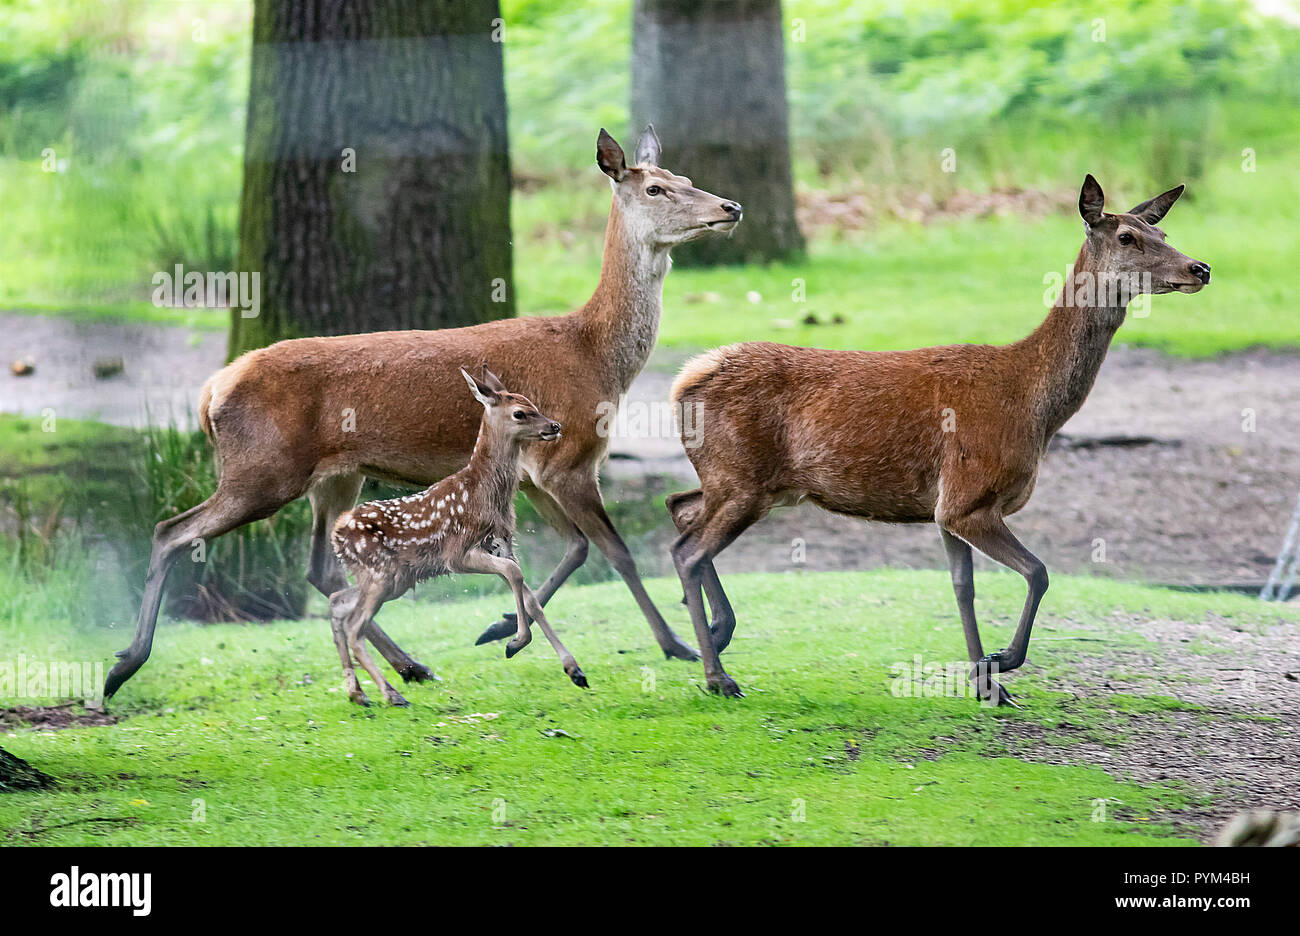 Baby cervi (1-3 giorni) Godetevi i loro primi passi nel parco di Richmond Park come operai in guardia contro i visitatori avvicinarsi troppo al cervo durante il parto Foto Stock